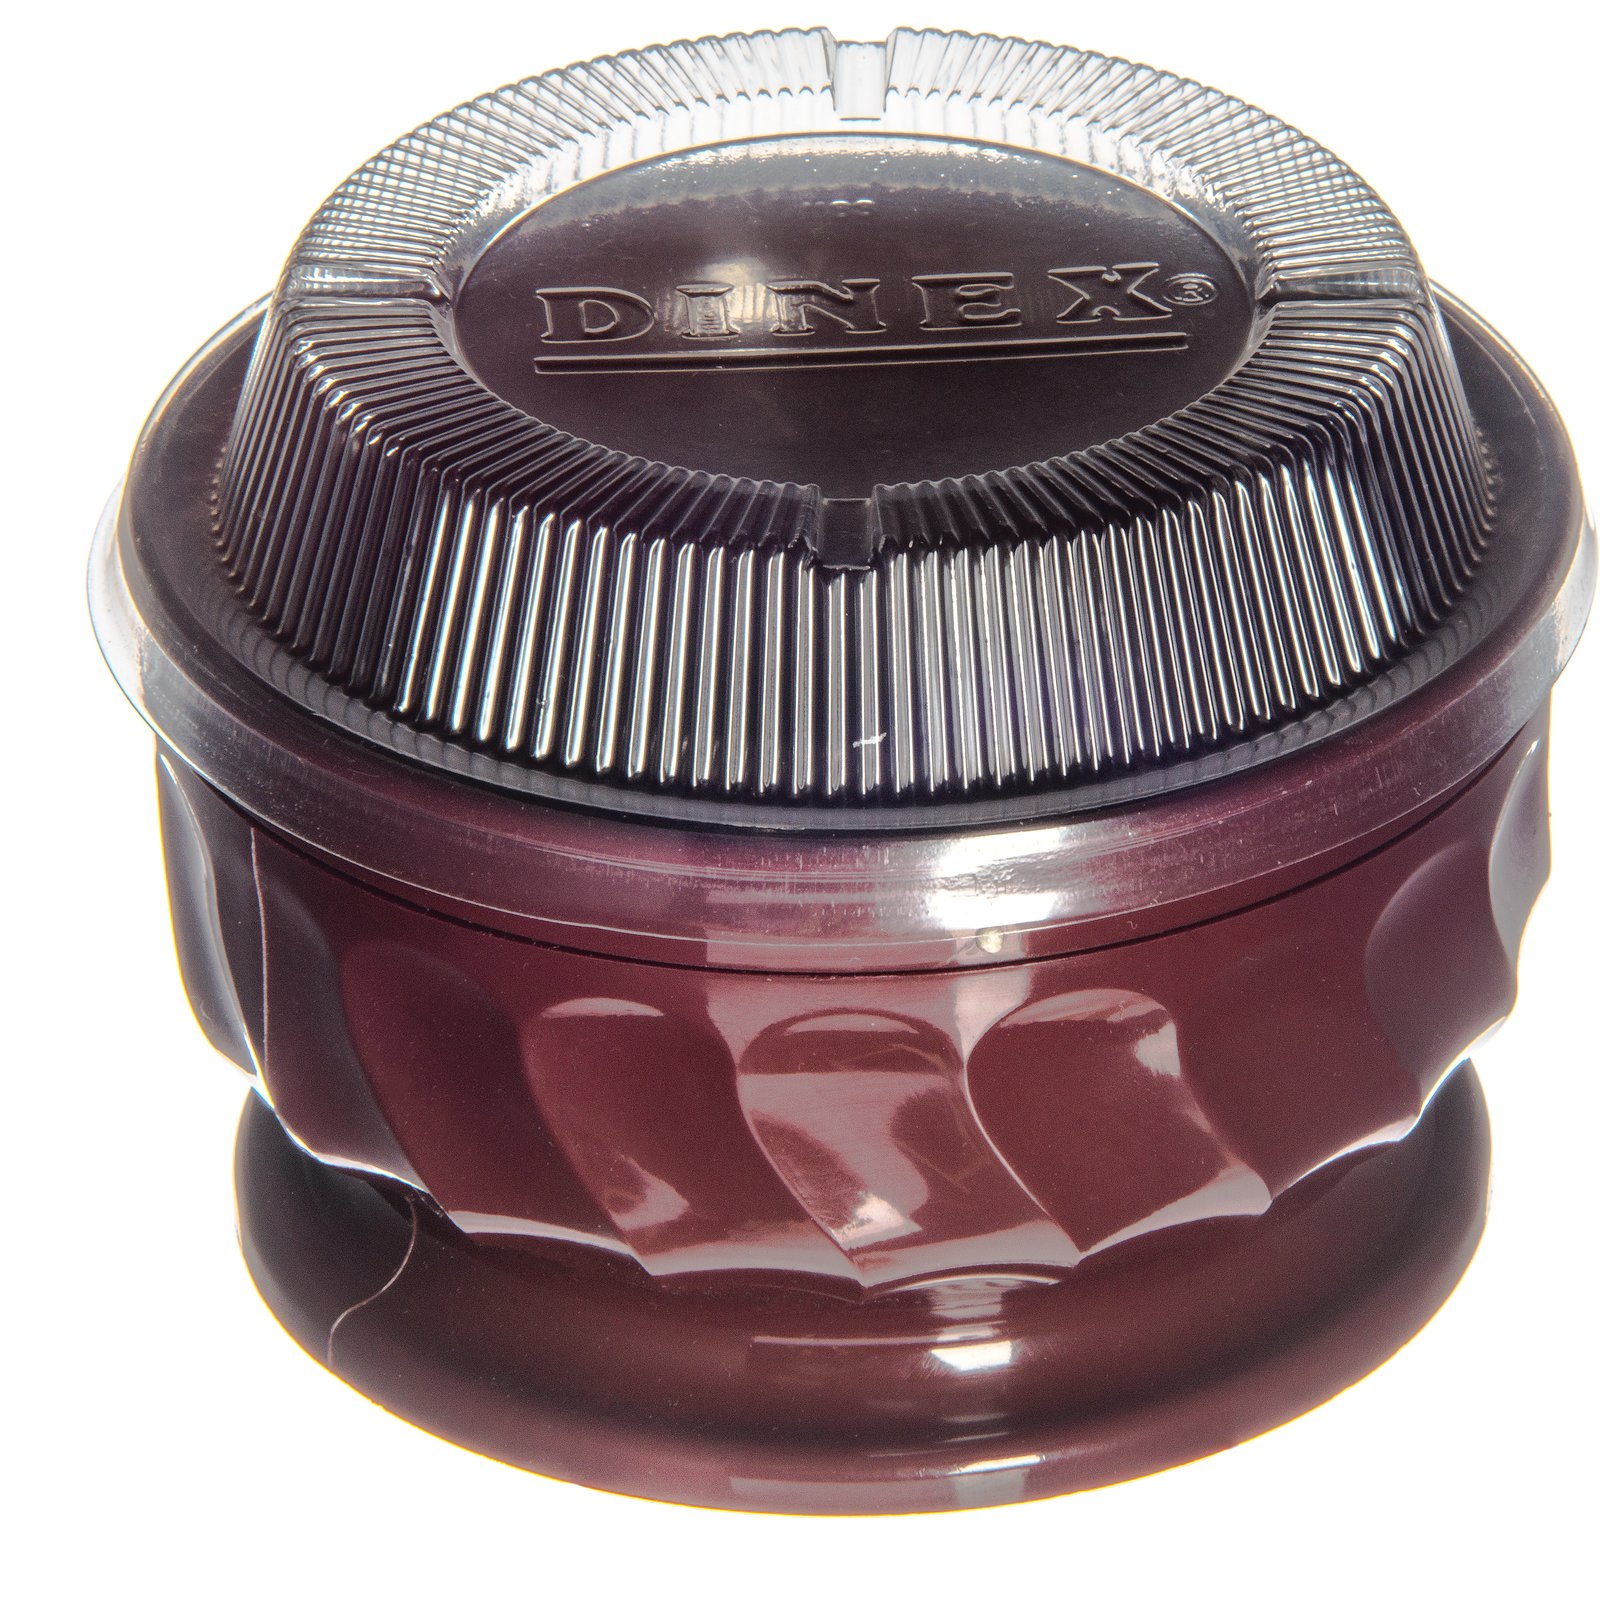 Dinex DX300061 Turnbury Cranberry 8 oz Insulated Mug 48 CS